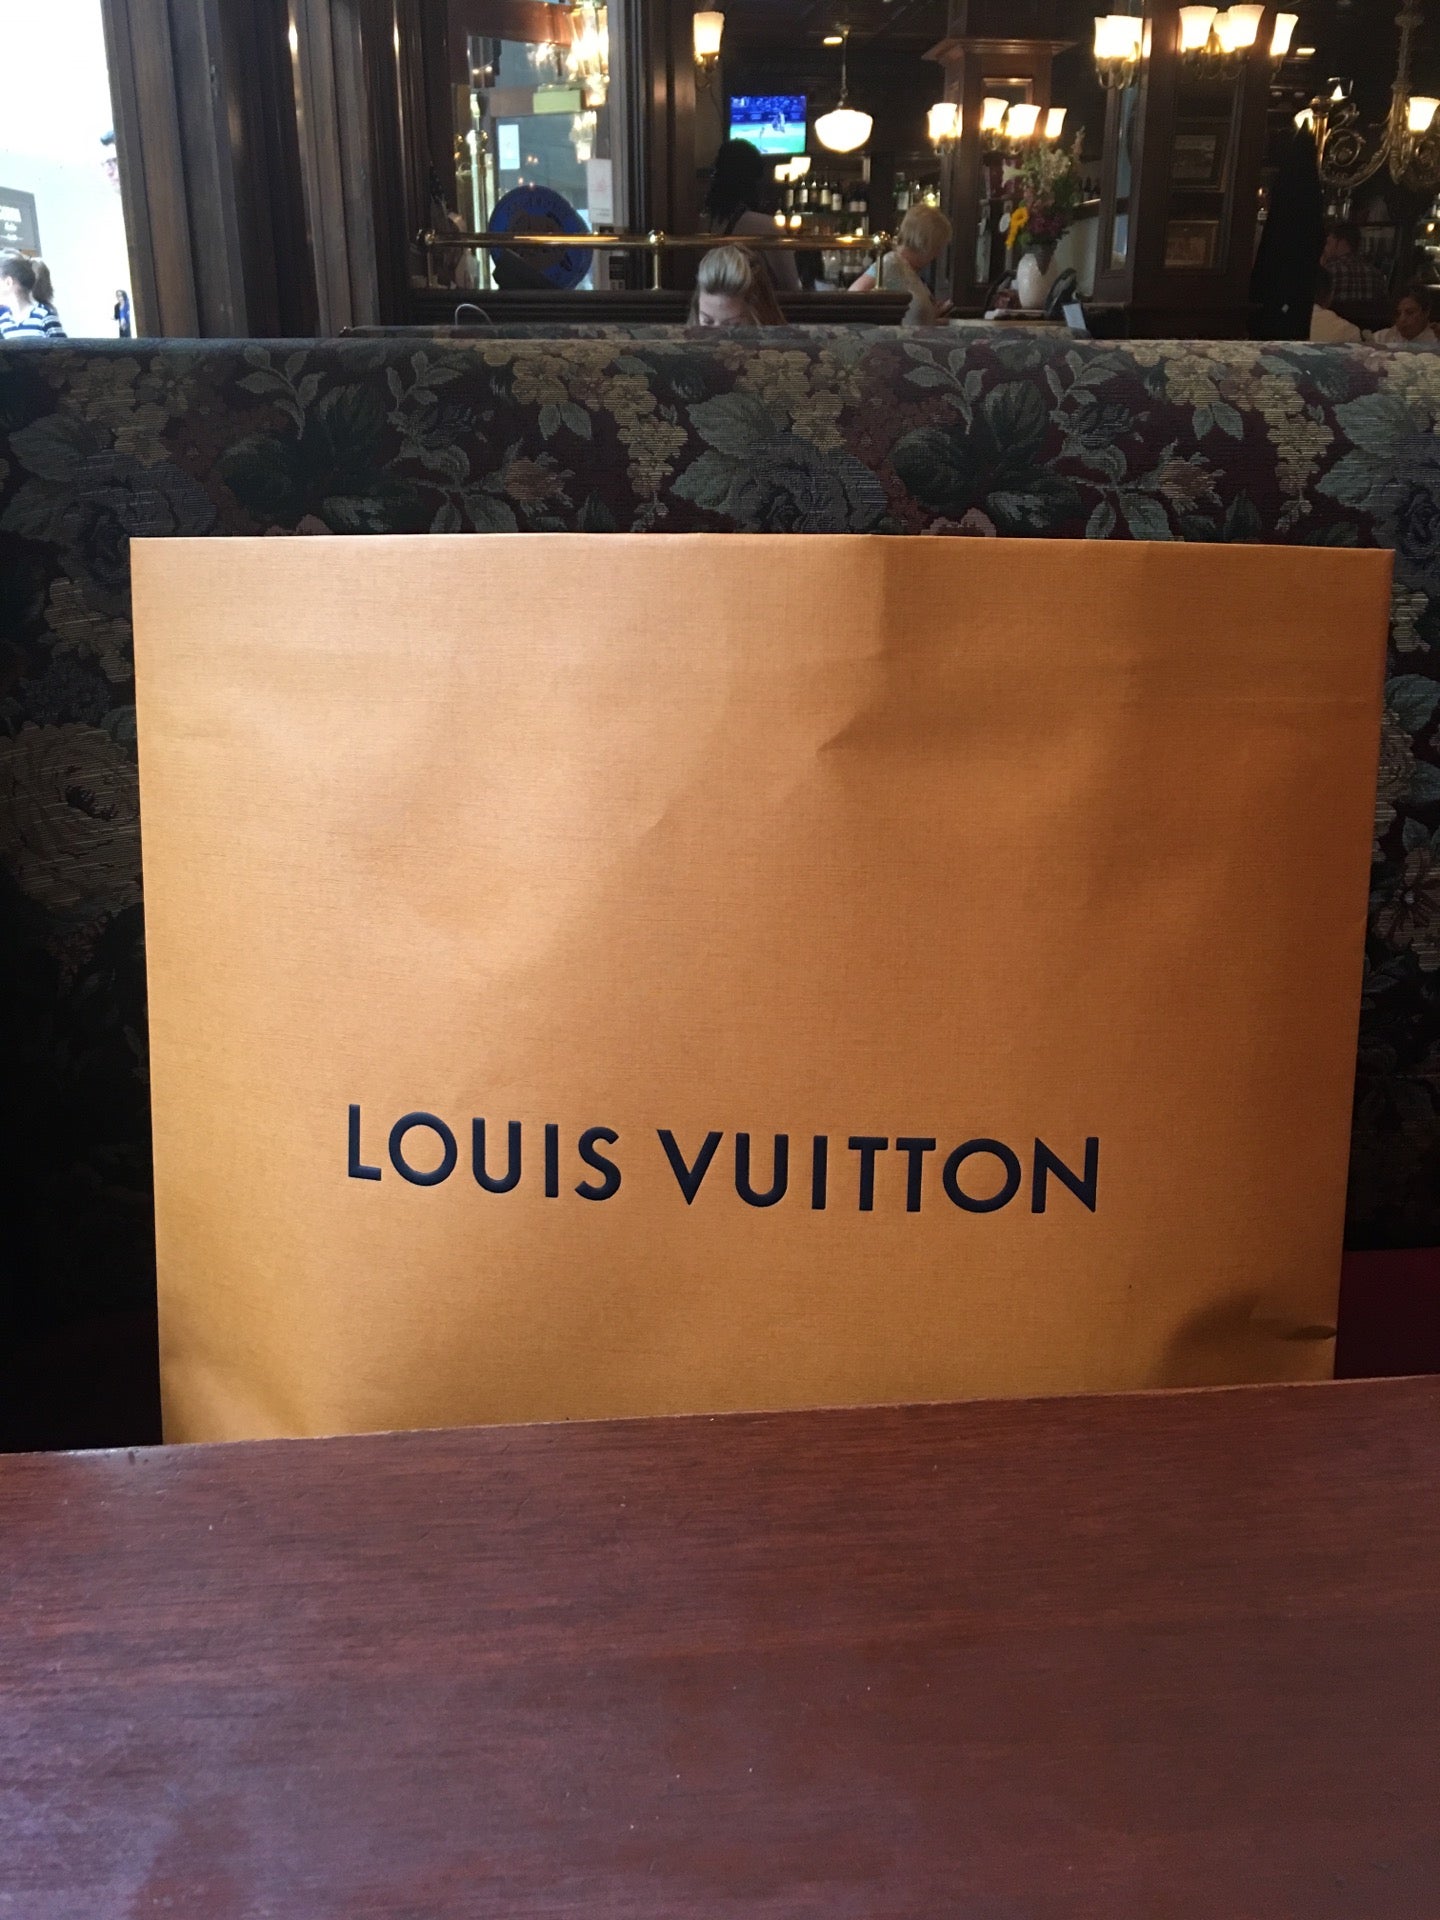 Louis Vuitton Short Hills Mall Reviews